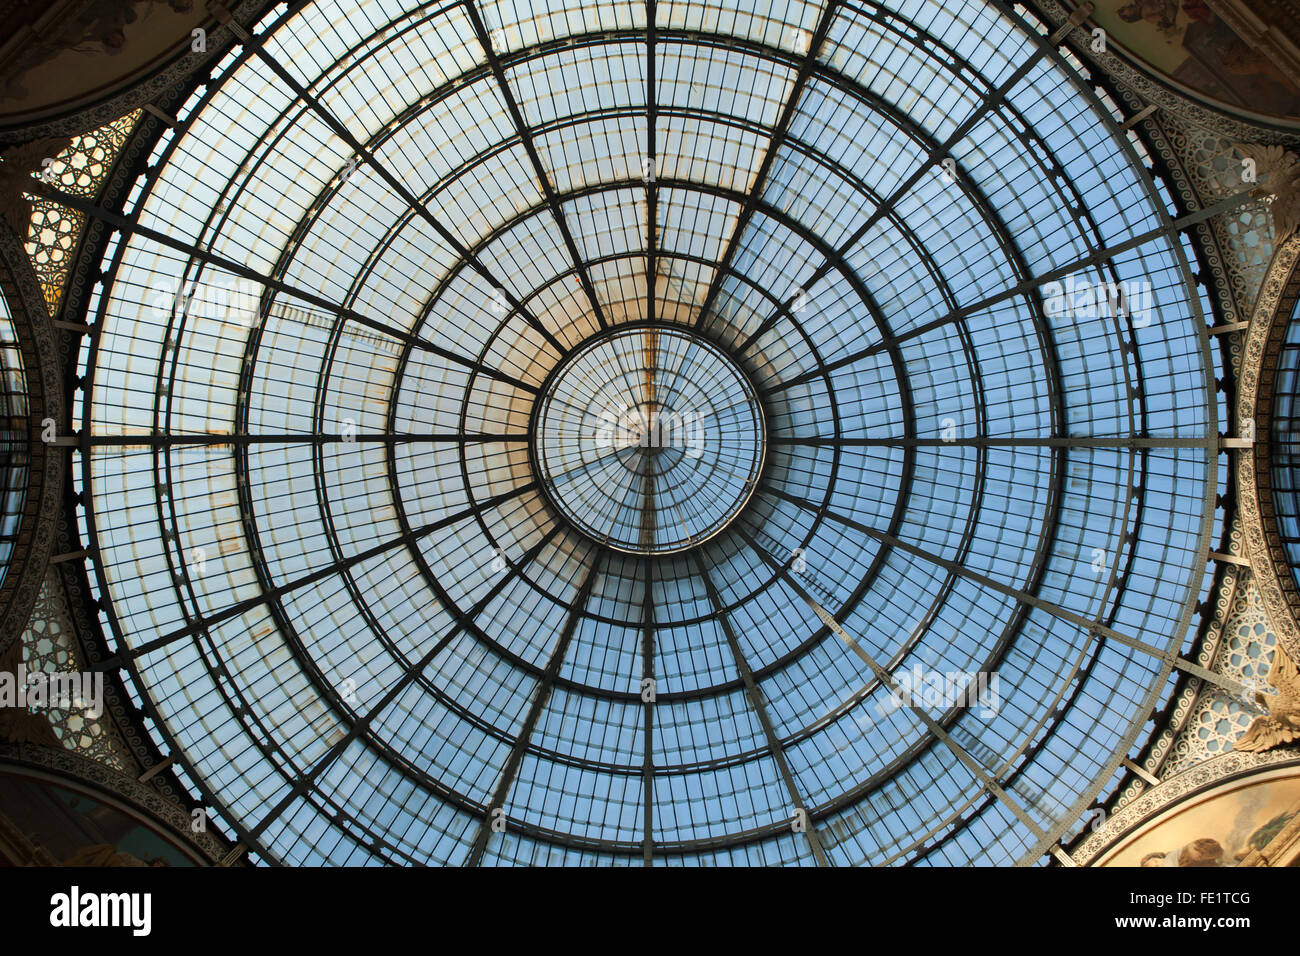 Cupola di vetro della Galleria Vittorio Emanuele II a Milano, lombardia, italia. Foto Stock